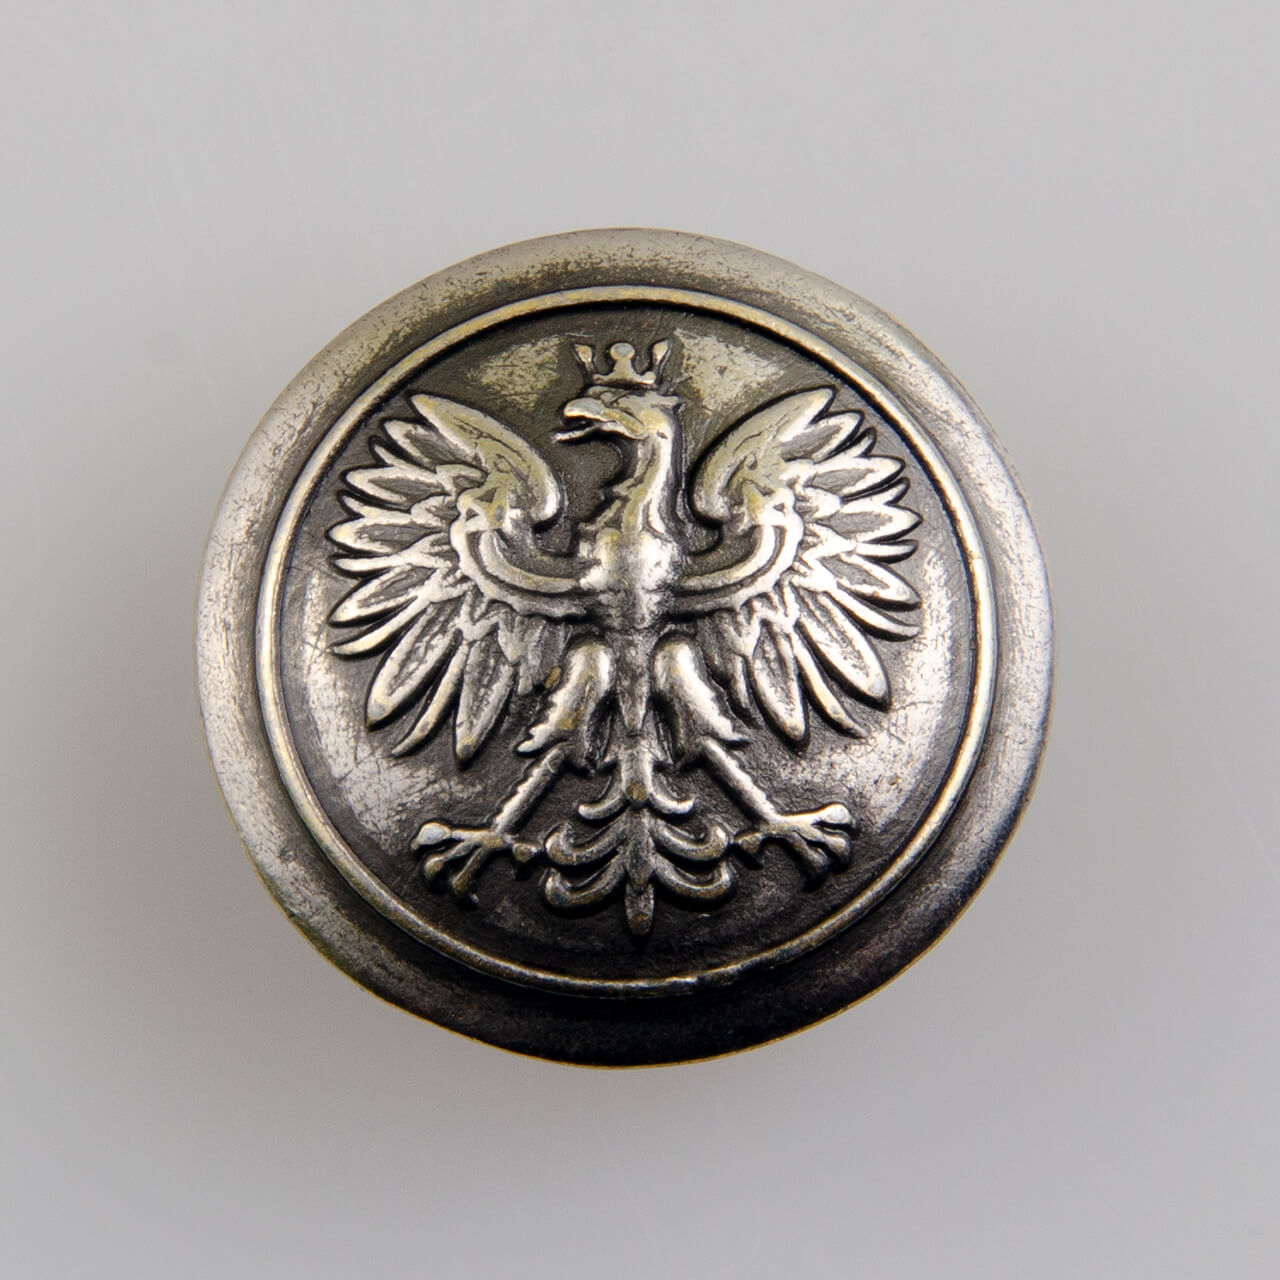 Policyjny guzik z orłem kolor srebrny przecierany, śr. 22mm (Oficjalny wzór)